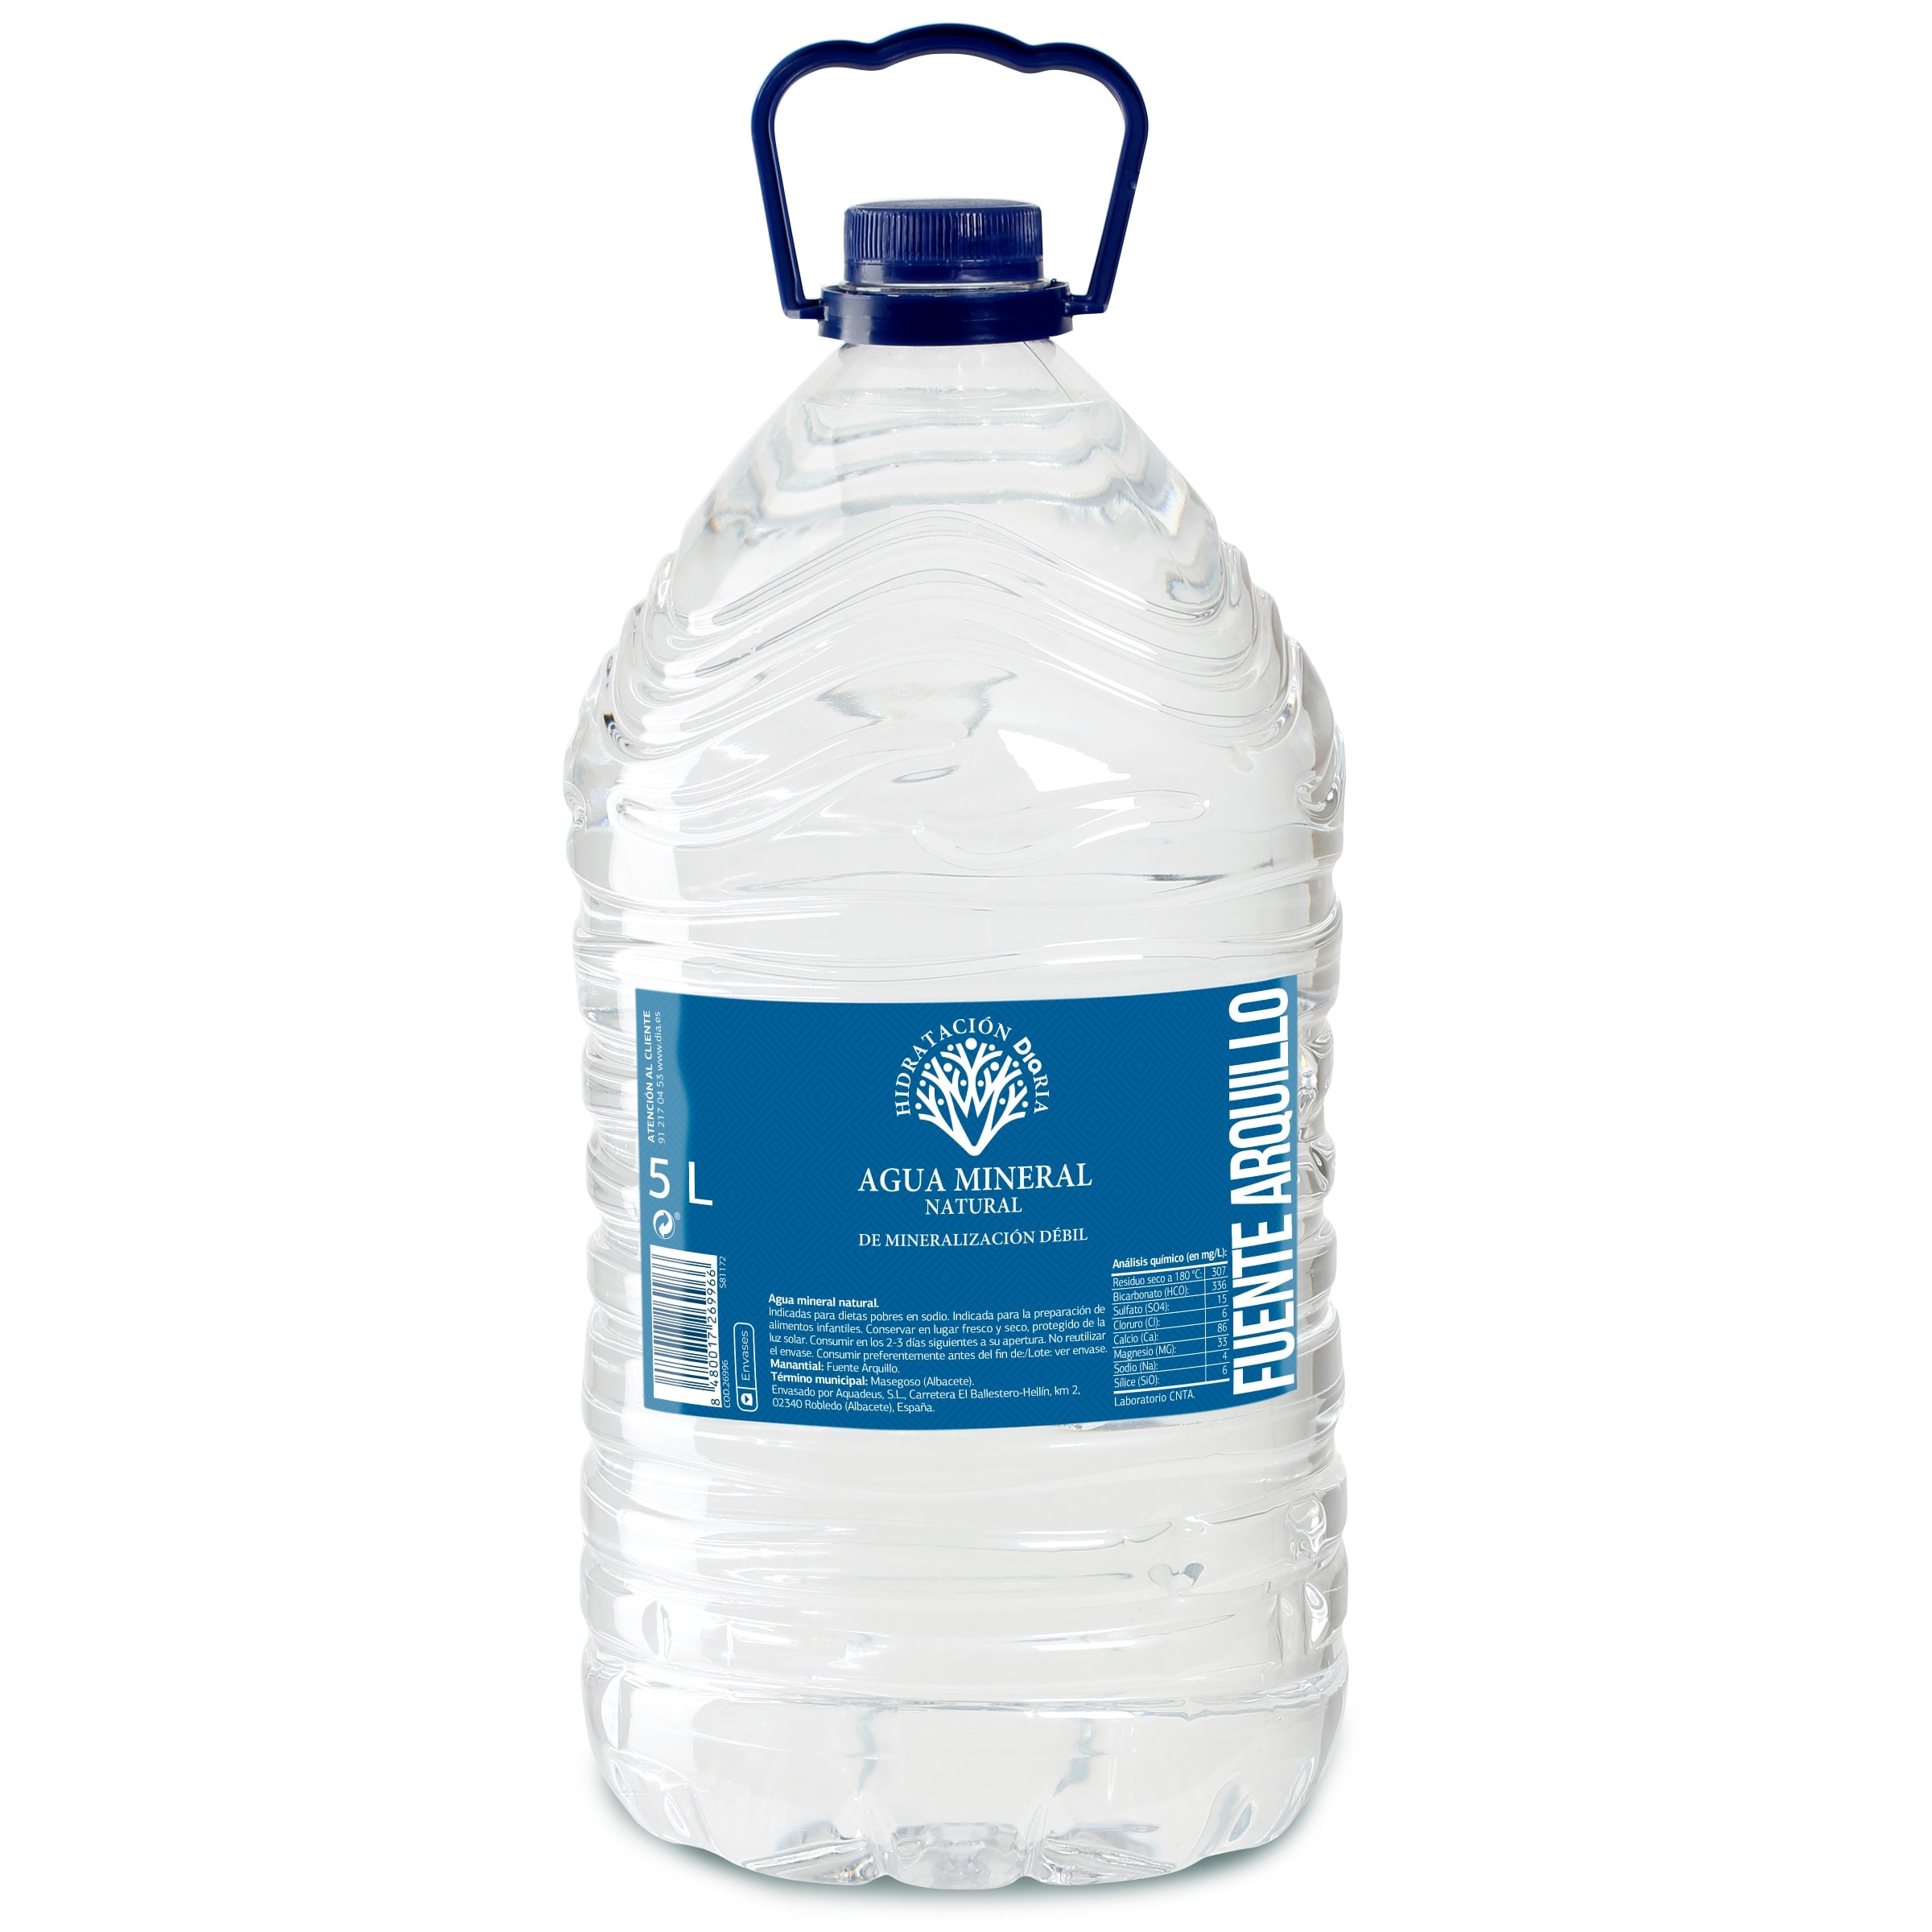 Comprar Agua mineral aquarel pet 5l en Supermercados MAS Online